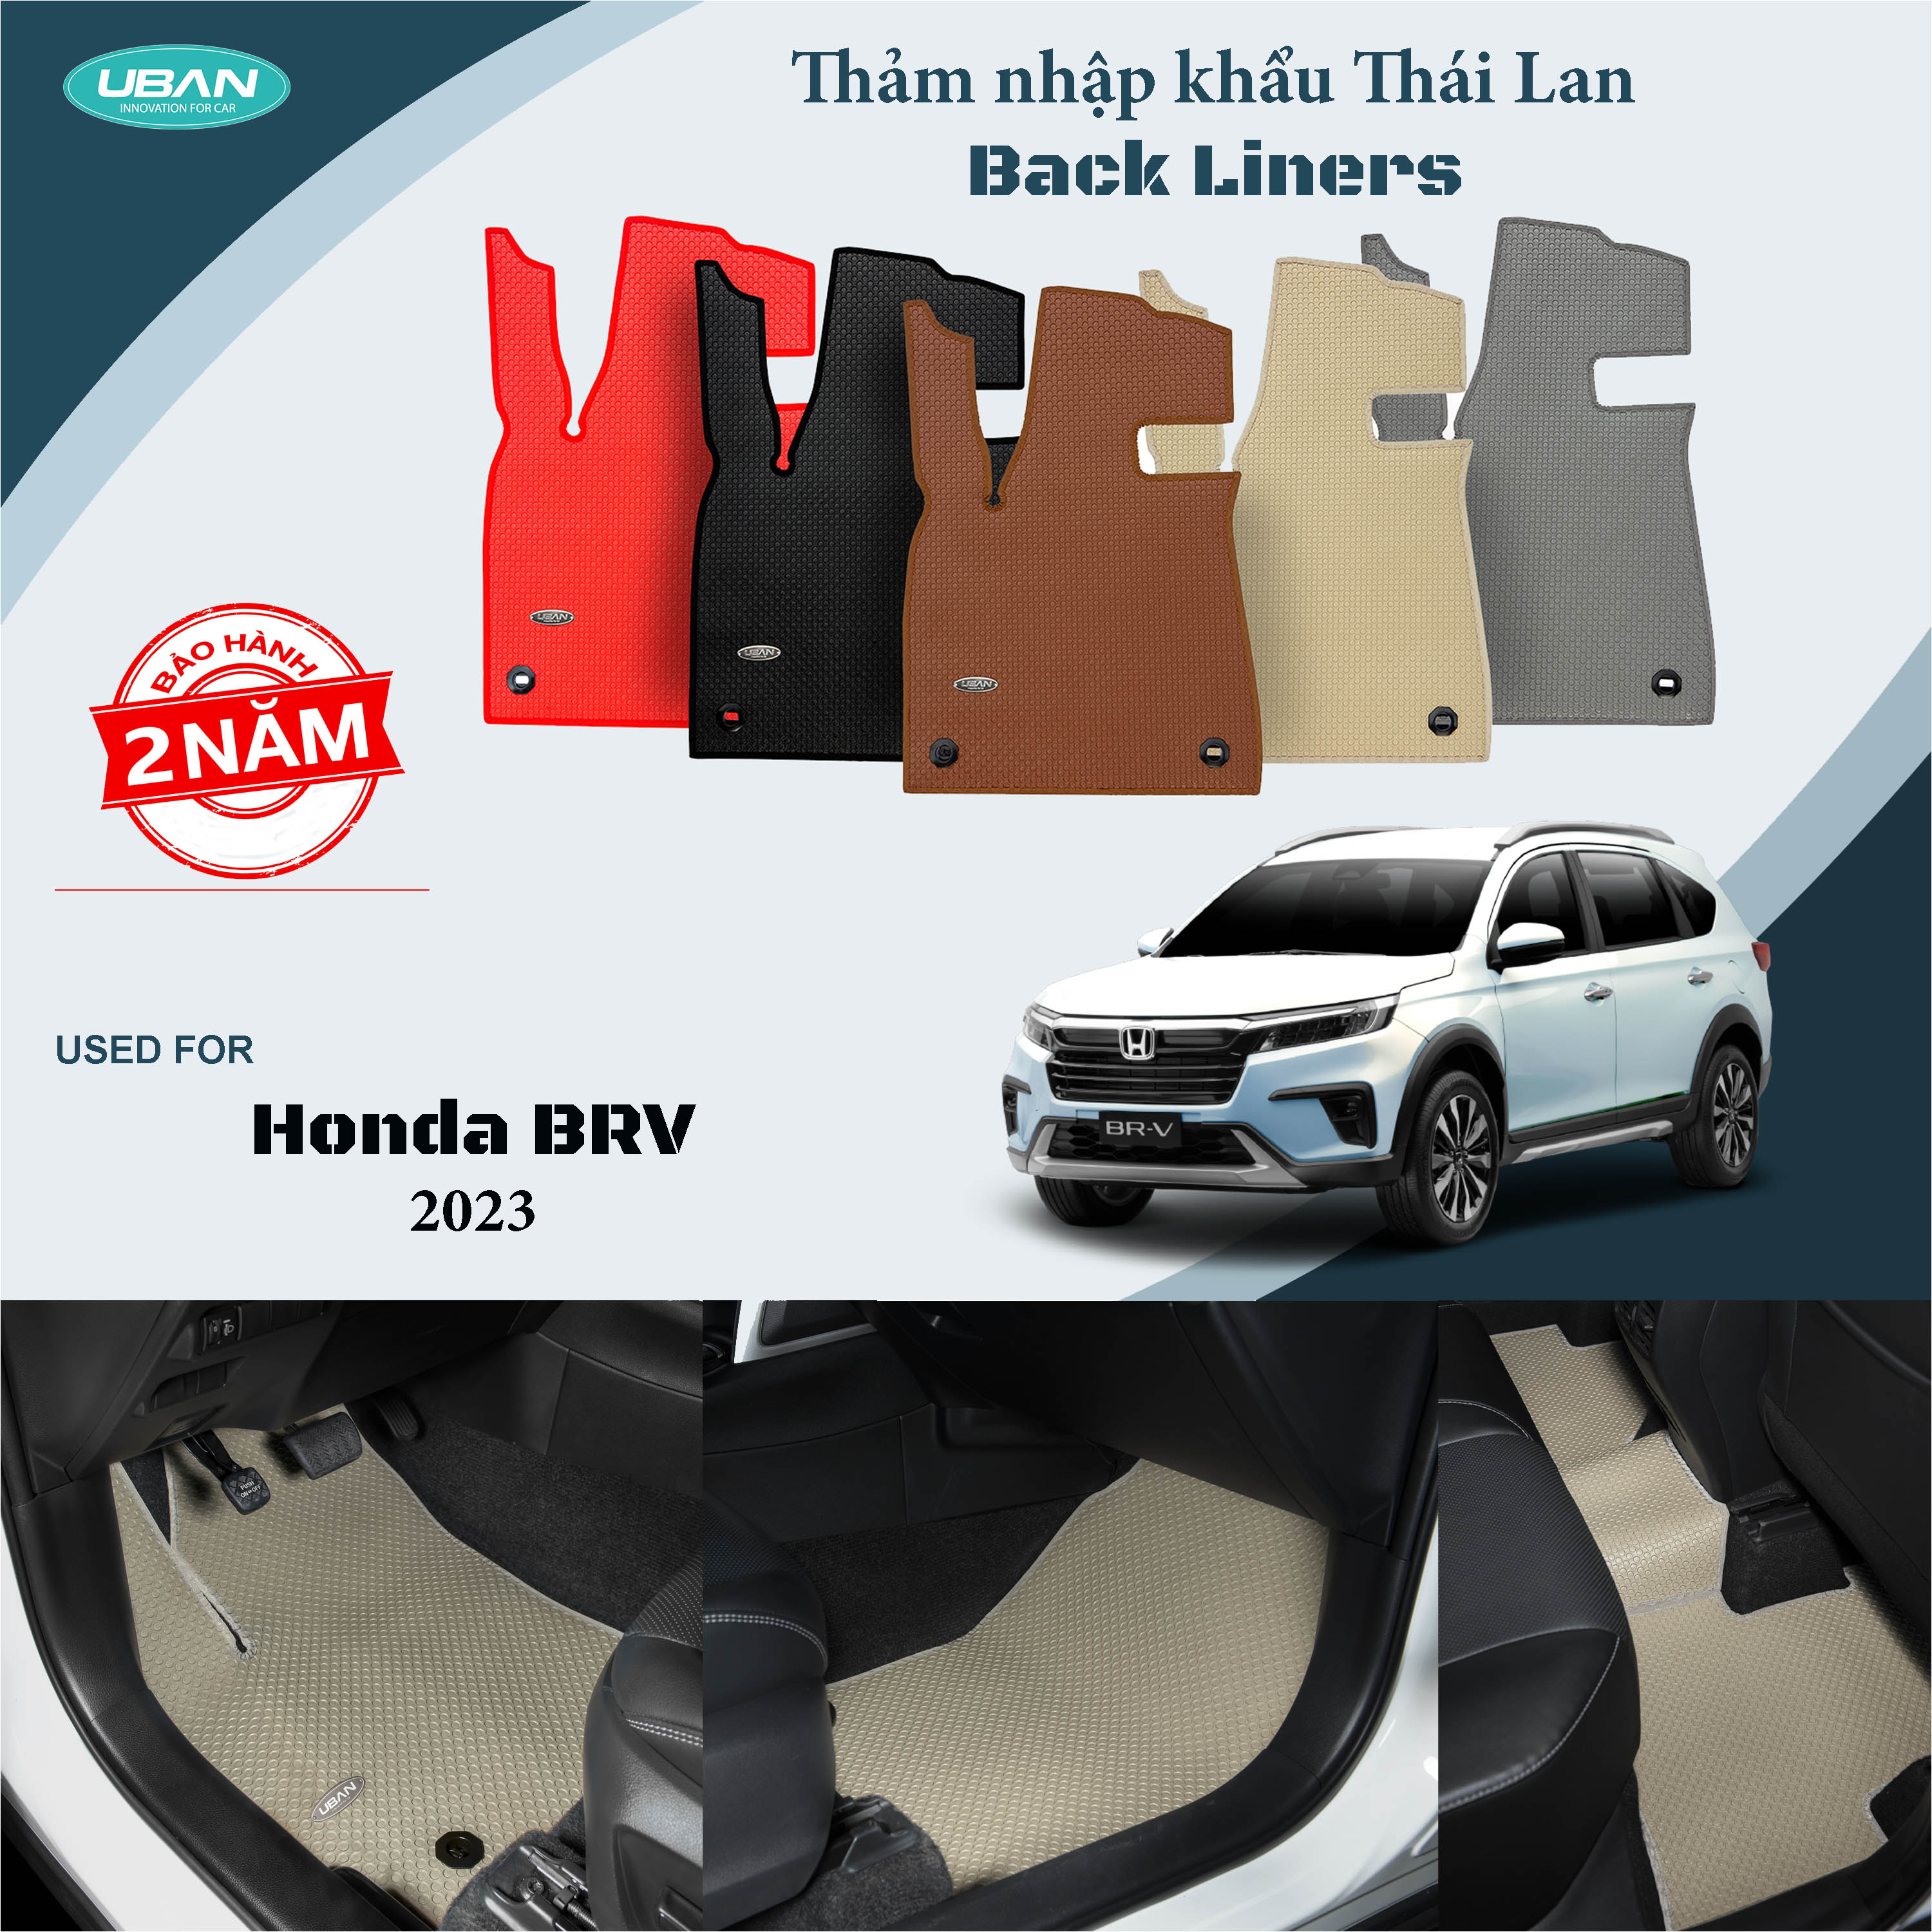 Thảm lót sàn ô tô UBAN cho xe Honda BRV 2023 - Nhập khẩu Thái Lan